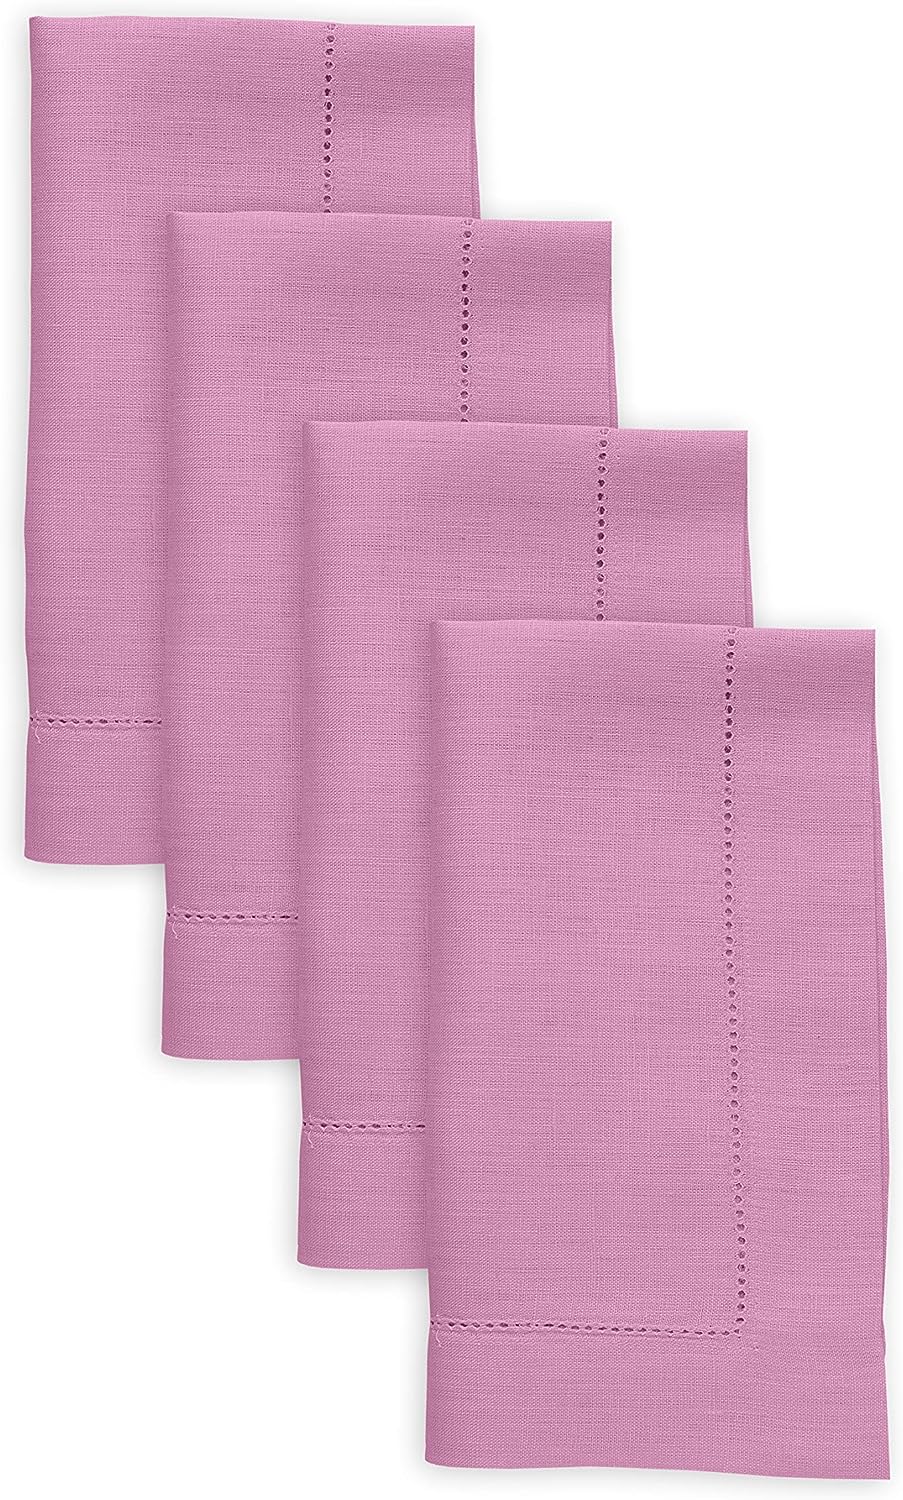 Hemstitched Table Linens (Violet Color)